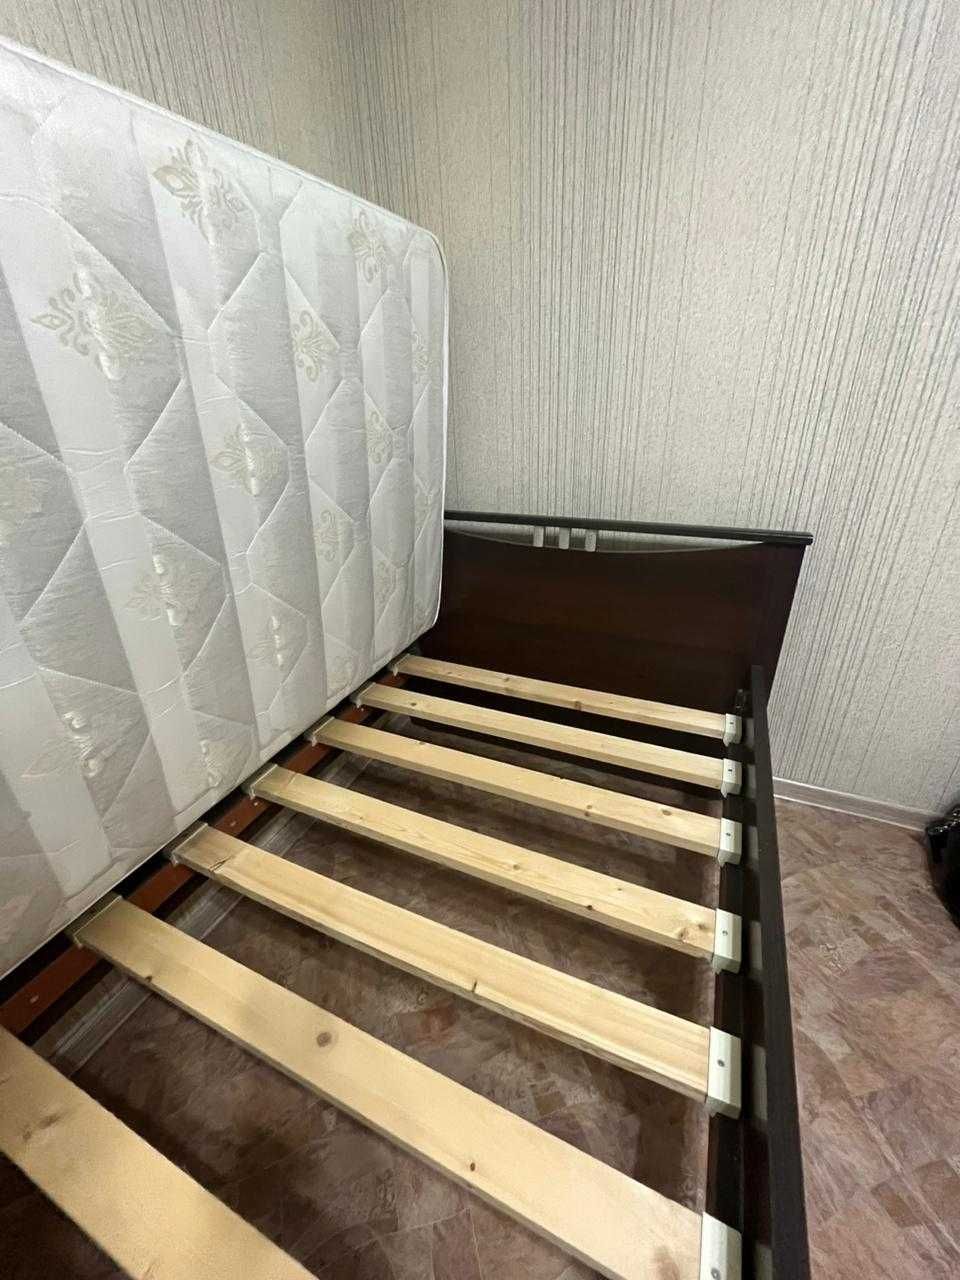 Односпальная кровать с матрацем в Пришахтинске